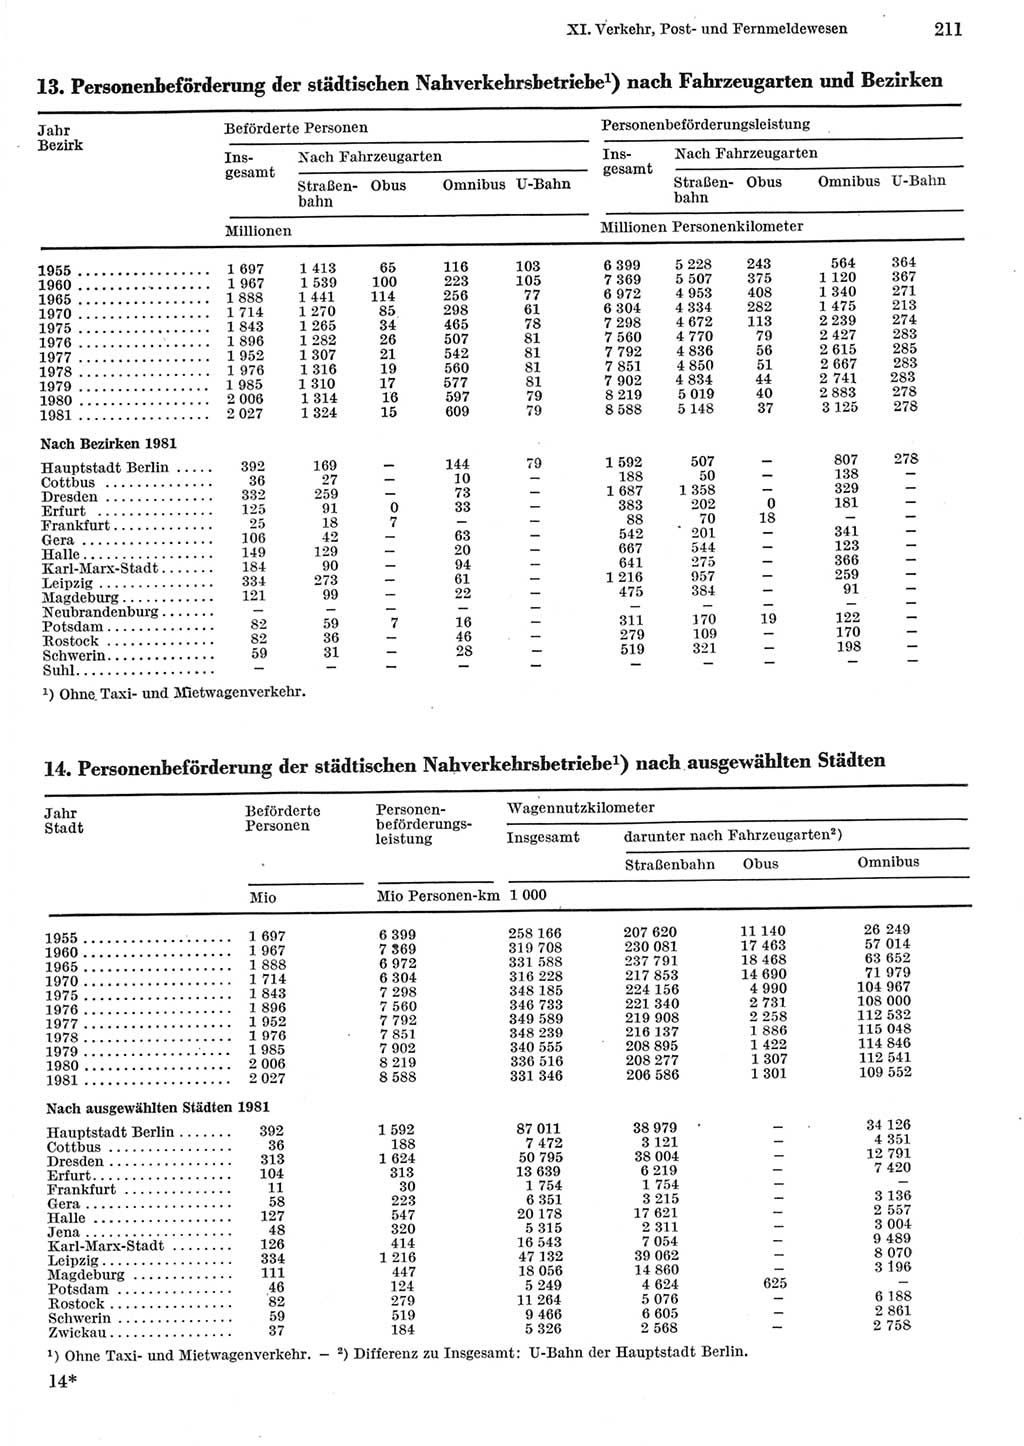 Statistisches Jahrbuch der Deutschen Demokratischen Republik (DDR) 1982, Seite 211 (Stat. Jb. DDR 1982, S. 211)